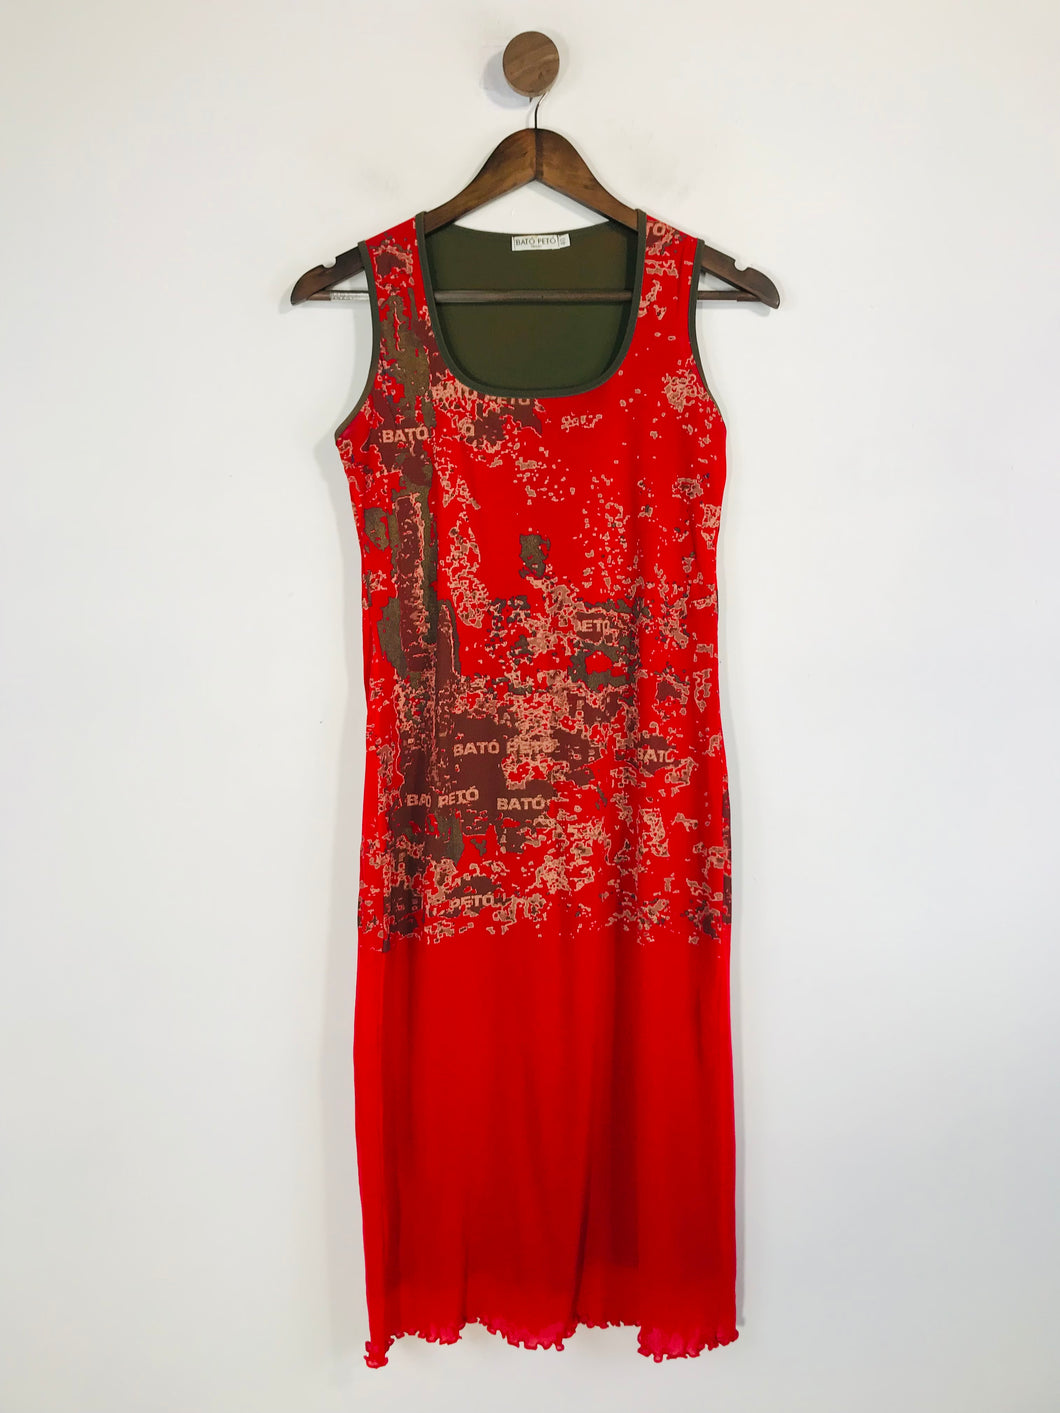 Bato Peto Women's Midi Bodycon Dress | EU40 UK12 | Red